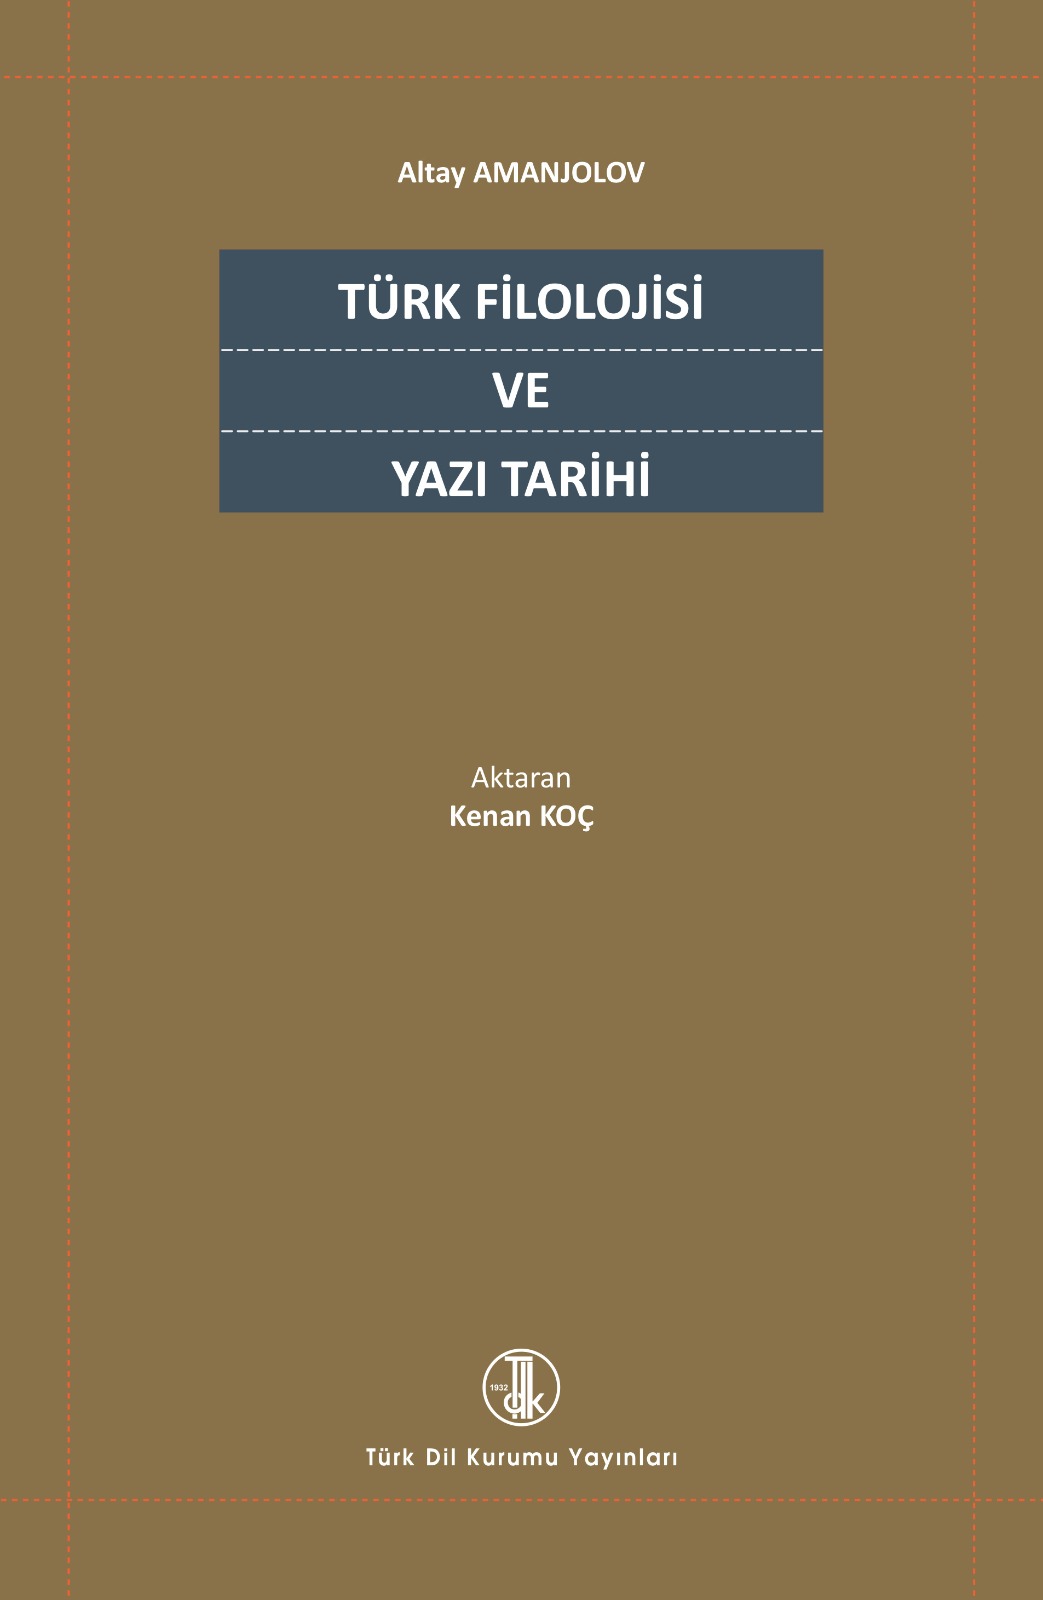 Türk Filolojisi ve Yazı Tarihi, 2022